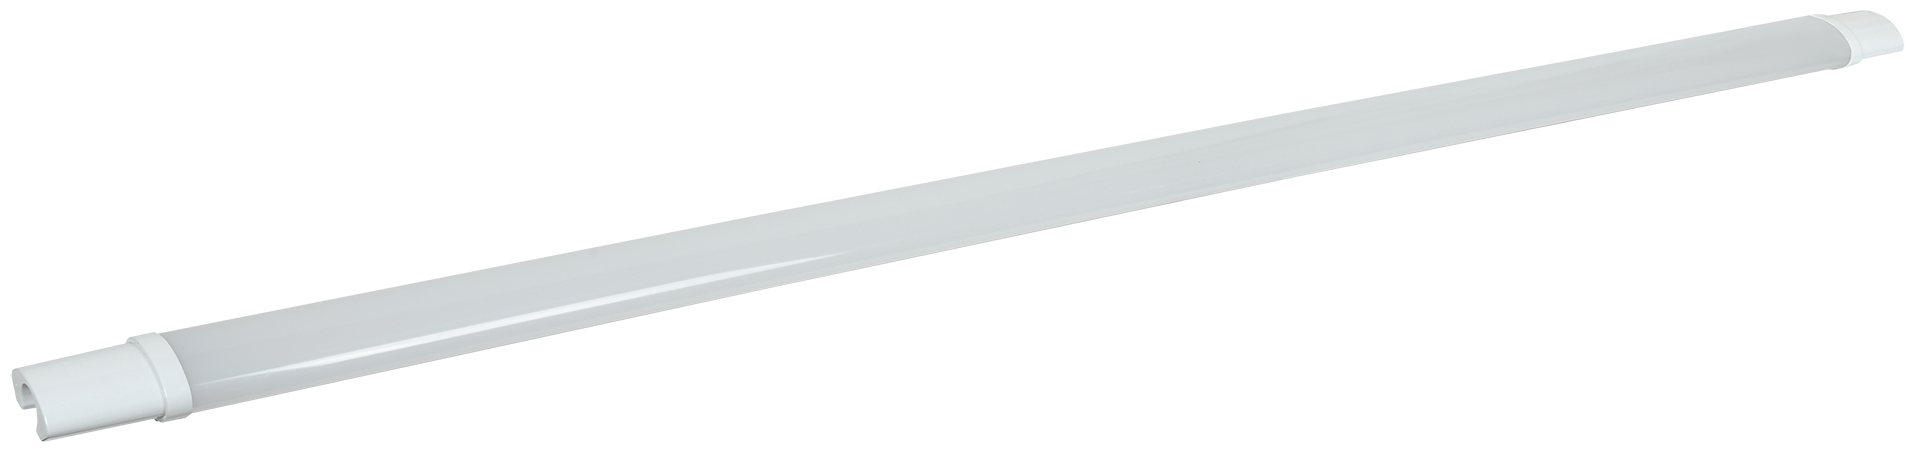 Настенно-потолочный светильник IEK ДСП 1312, 48 Вт, кол-во ламп: 1 шт., 4000 К, цвет арматуры: белый, цвет плафона: белый